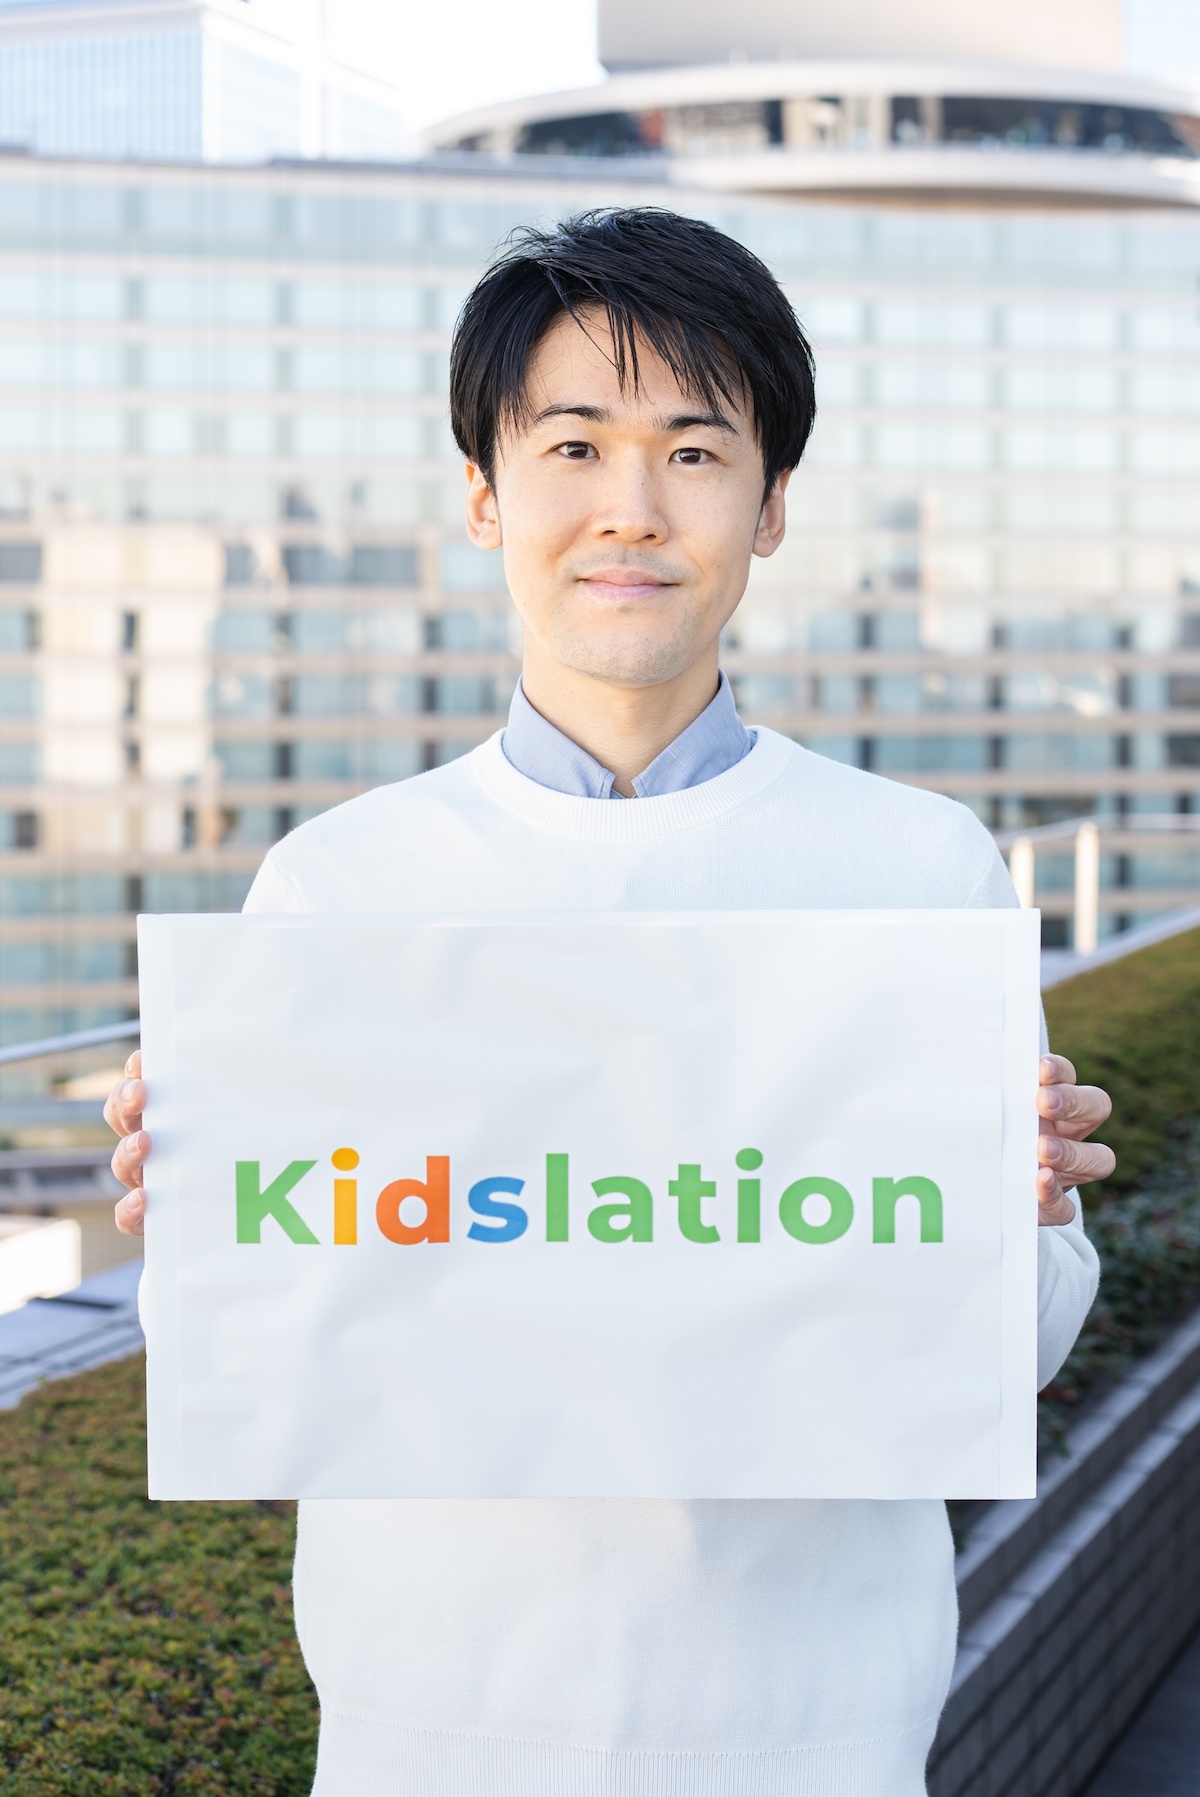 「Kidslation」事業推進者の岸健人さん。離乳食用商品の豊富さに対し、幼児食期(1歳半〜6歳)の商品が少ないことに着目し、本事業を推進した